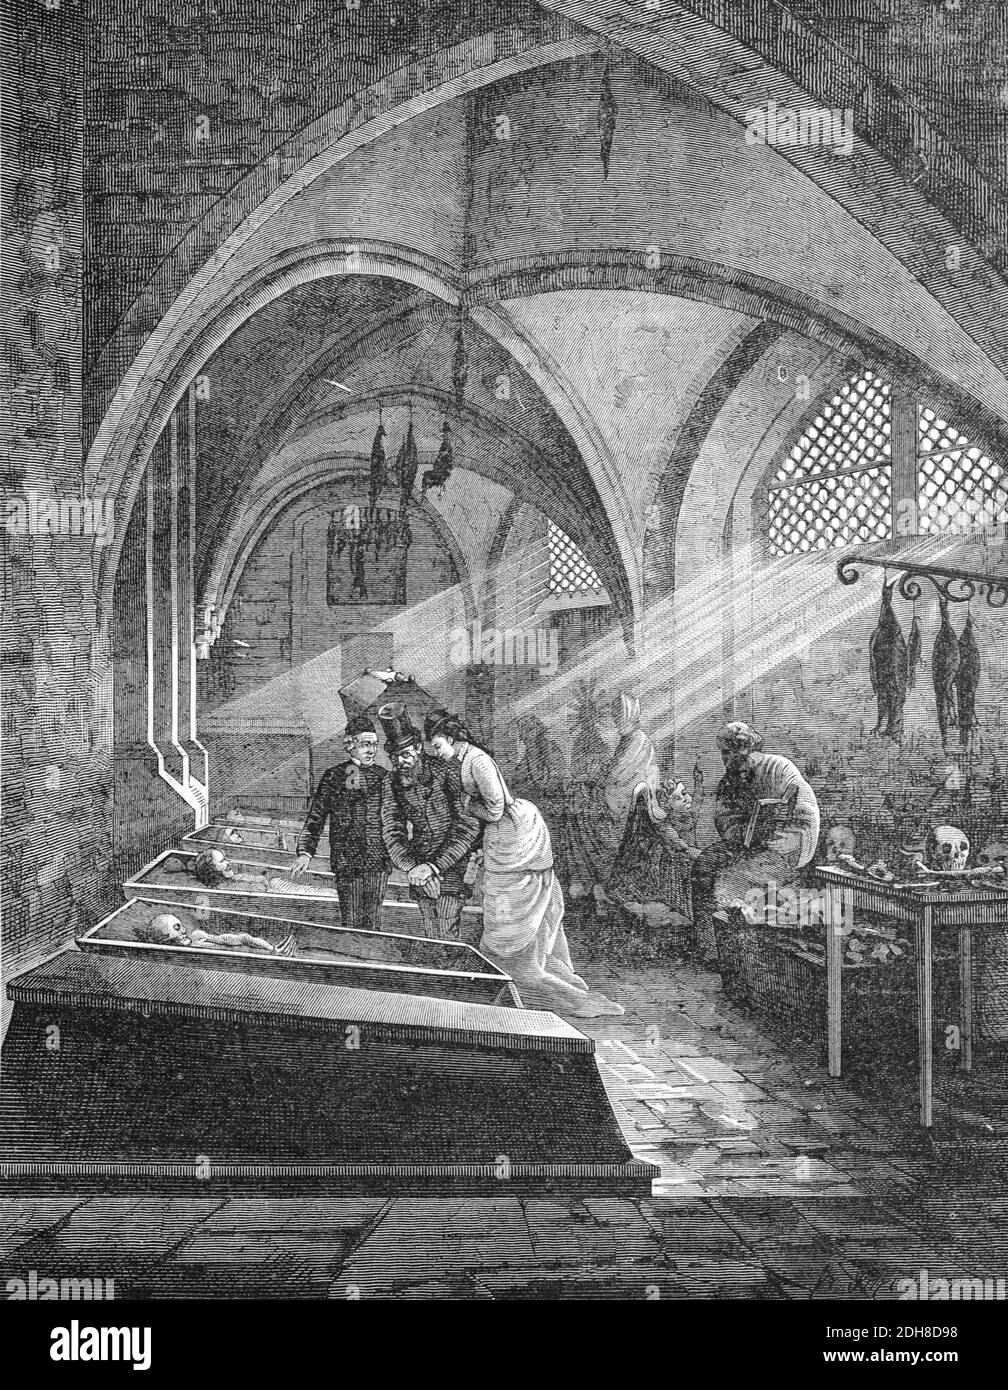 Mummie nel seminterrato o Cripta della Cattedrale di Brema in Germania (Eng 1880) Illustrazione o incisione vintage Foto Stock